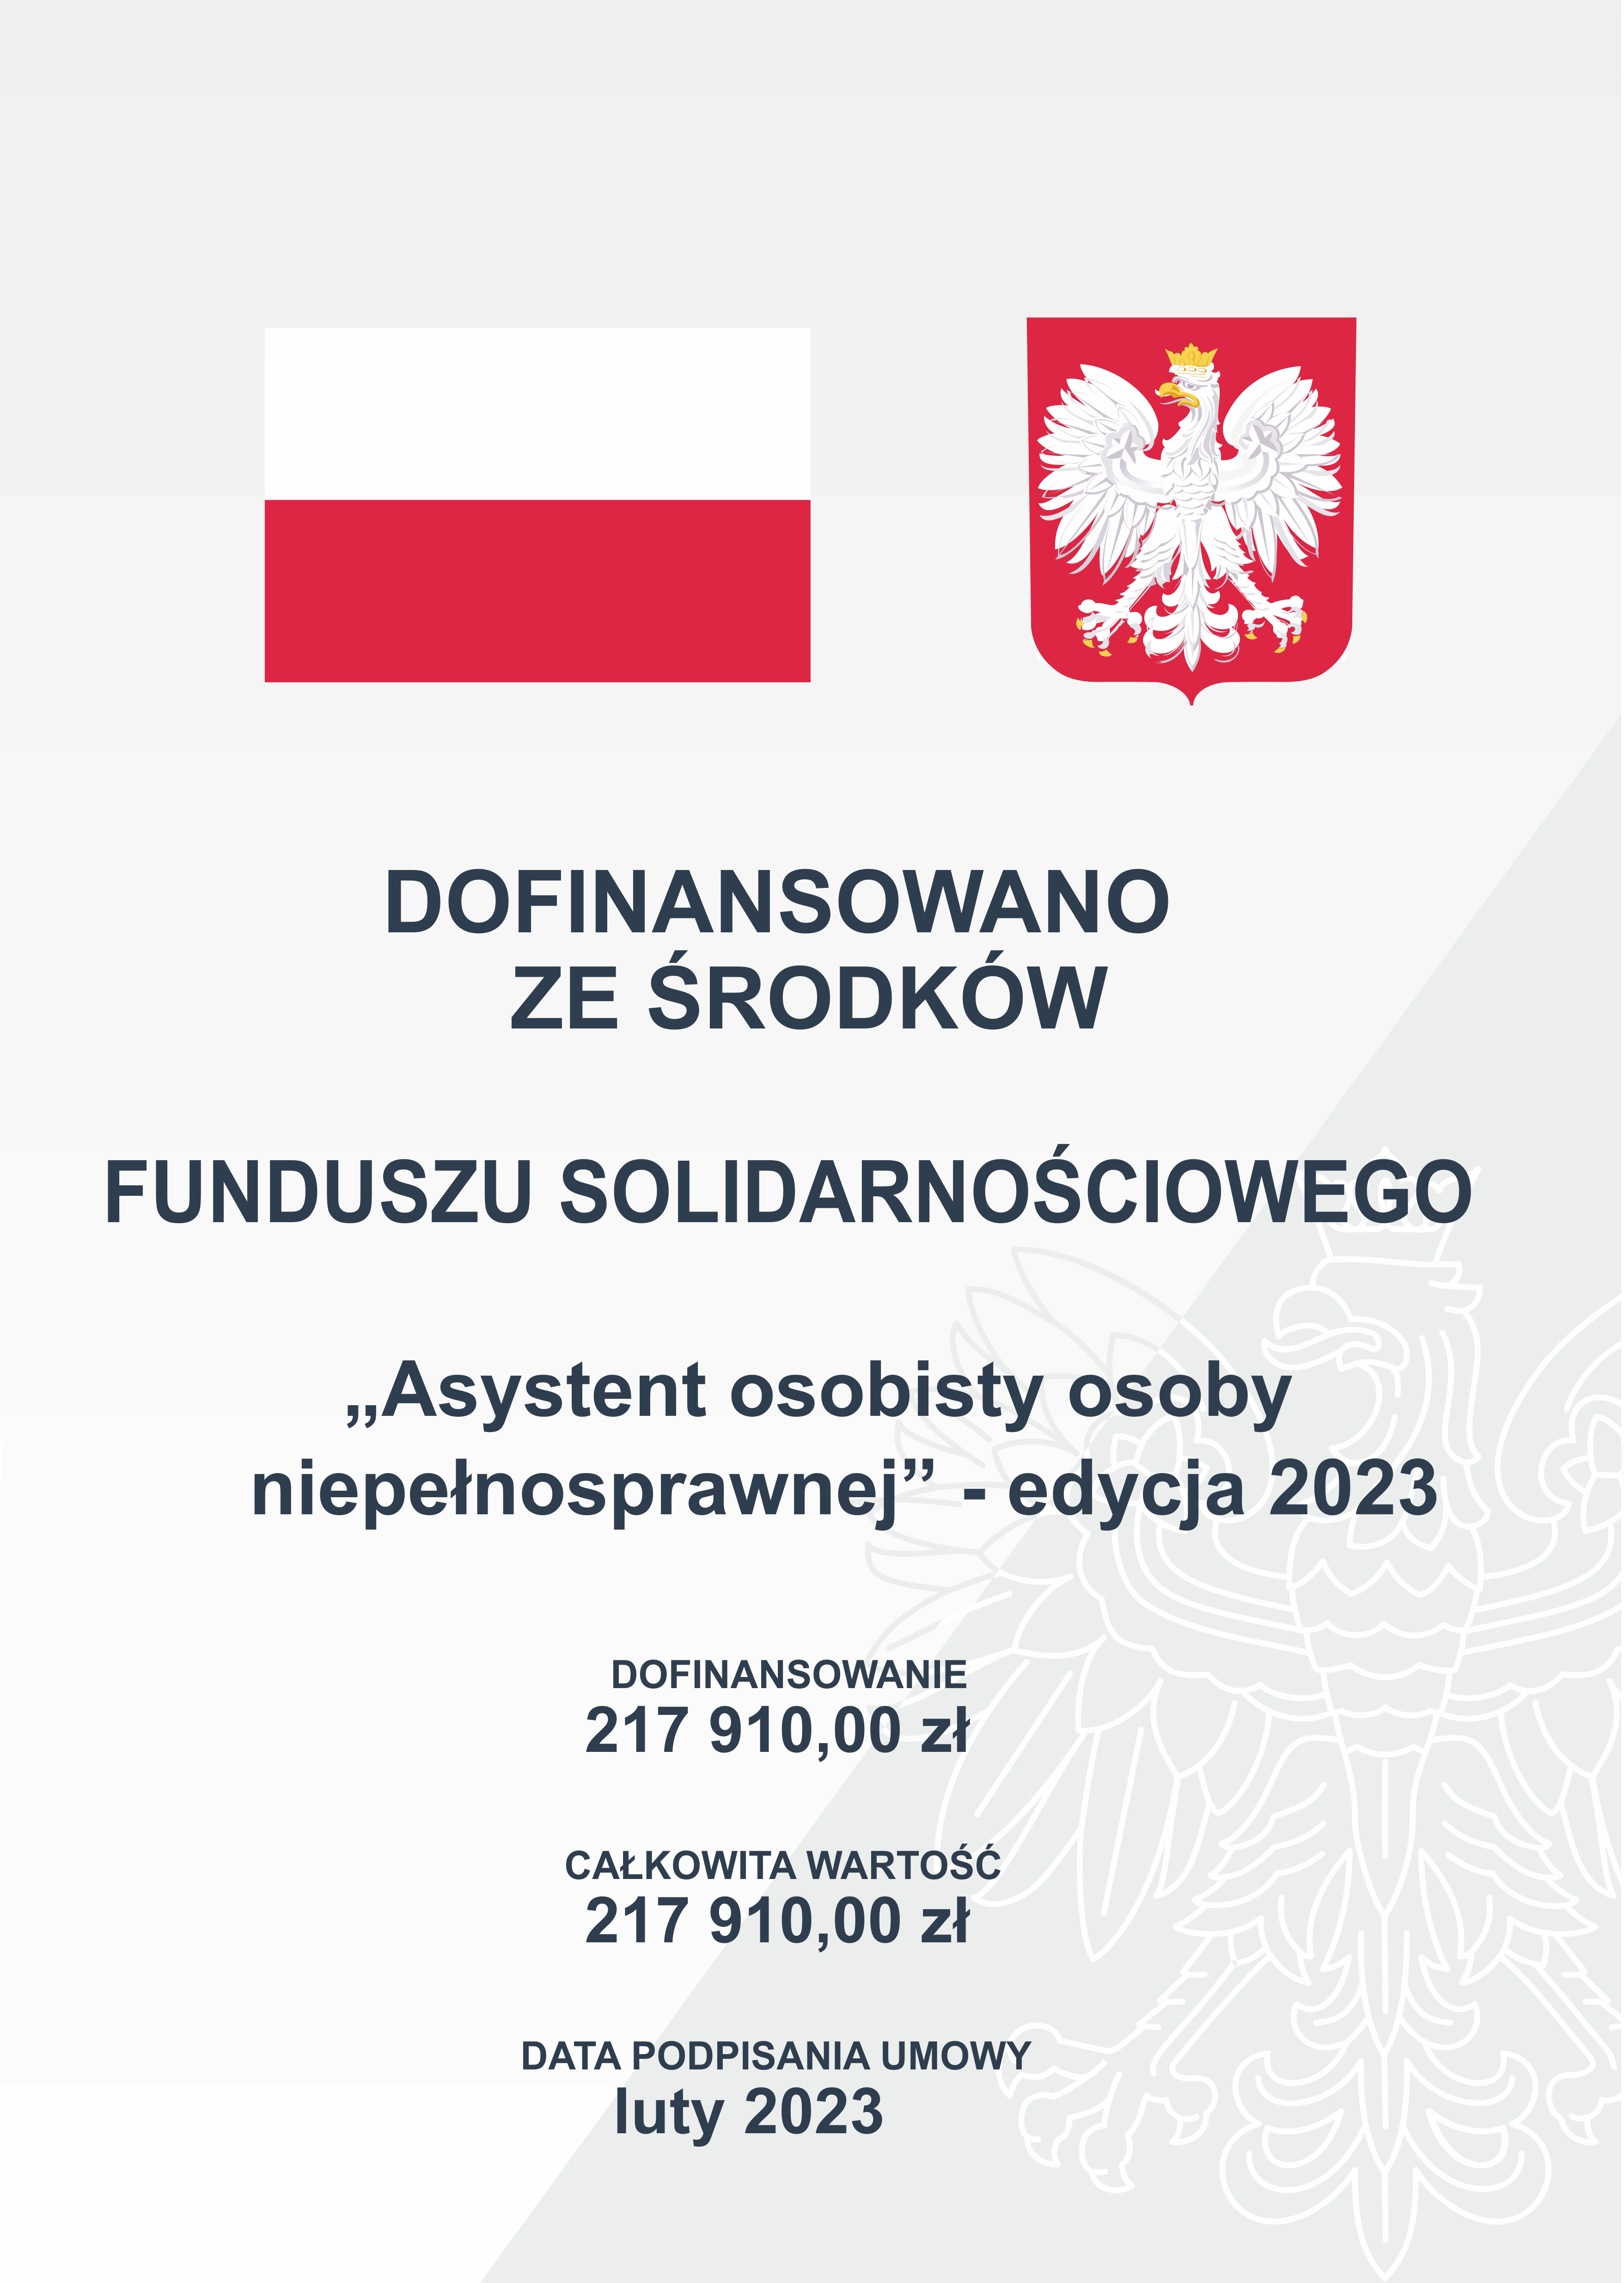 Opis alternatywny: Grafika z elementami wizualnymi przedstawiająca polską flagę i herb, z tekstem dotyczącym dofinansowania z Funduszu Solidarnościowego, 